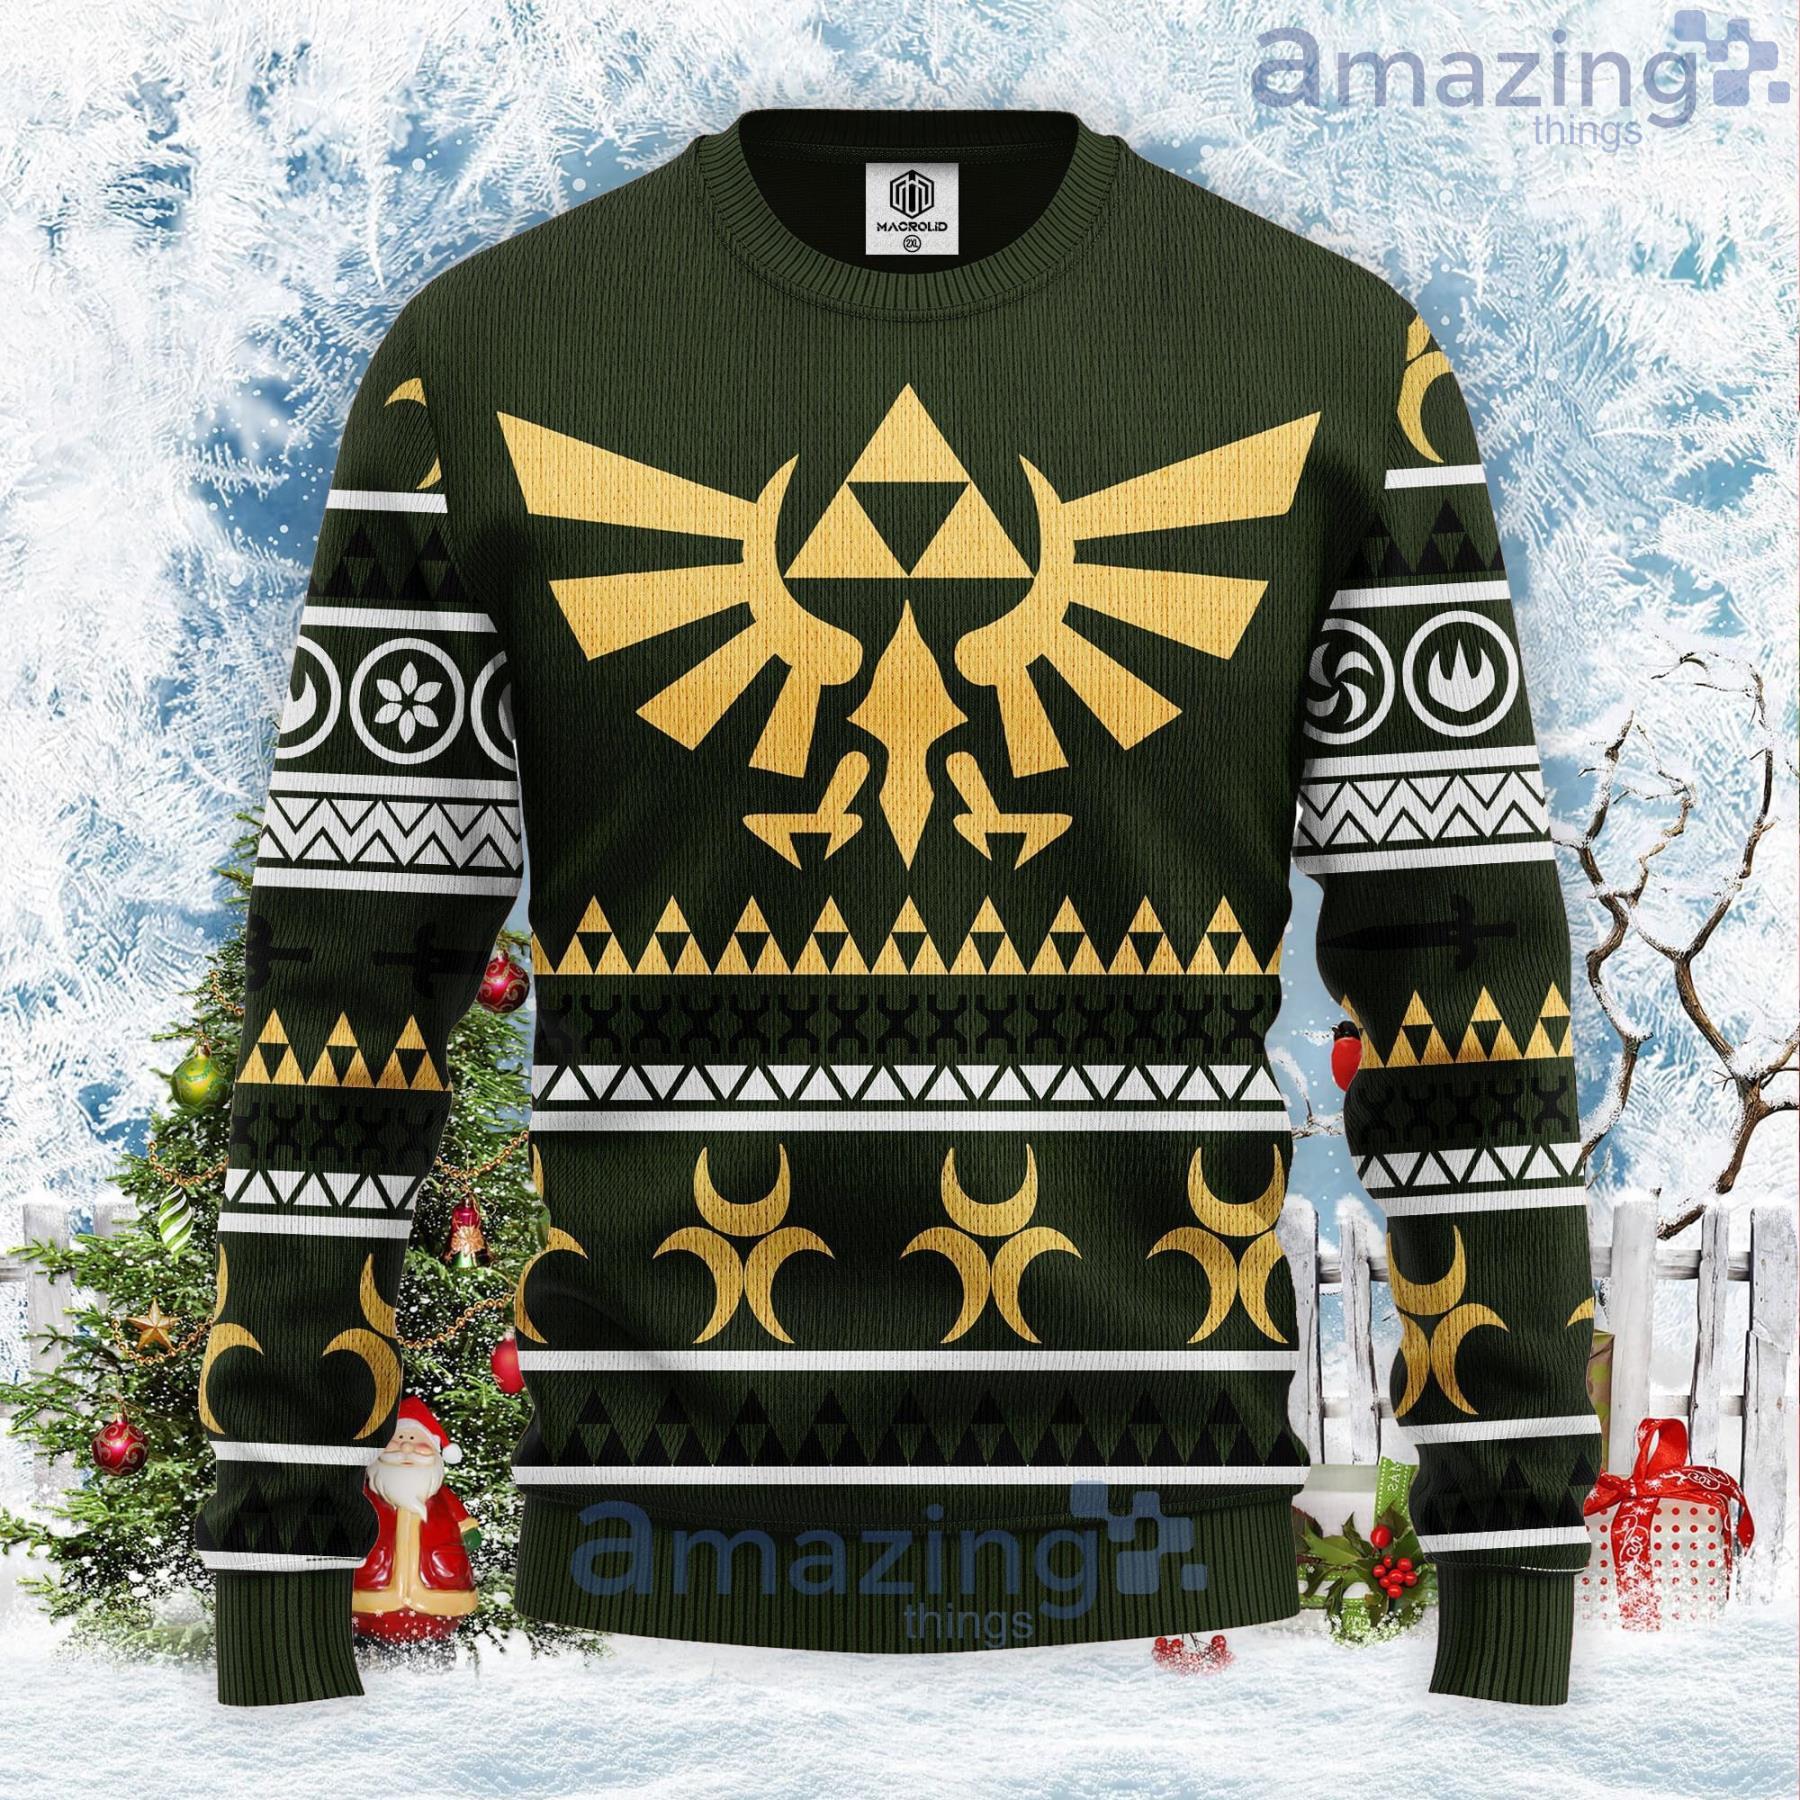 Christmas Hero Legend Of Zelda Gifts For Family Christmas Holiday Ugly  Sweater - Horusteez